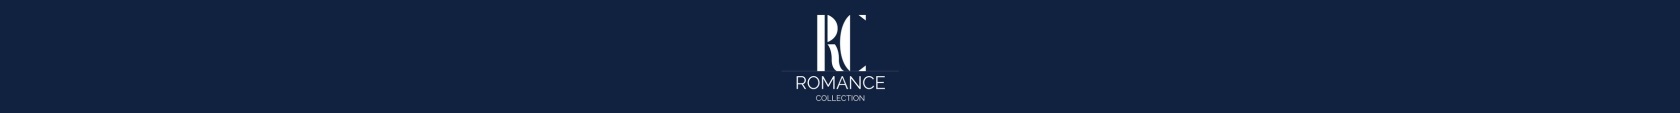 R&C Romance Collectie Sieraden Juwelen Maastricht Heerlen